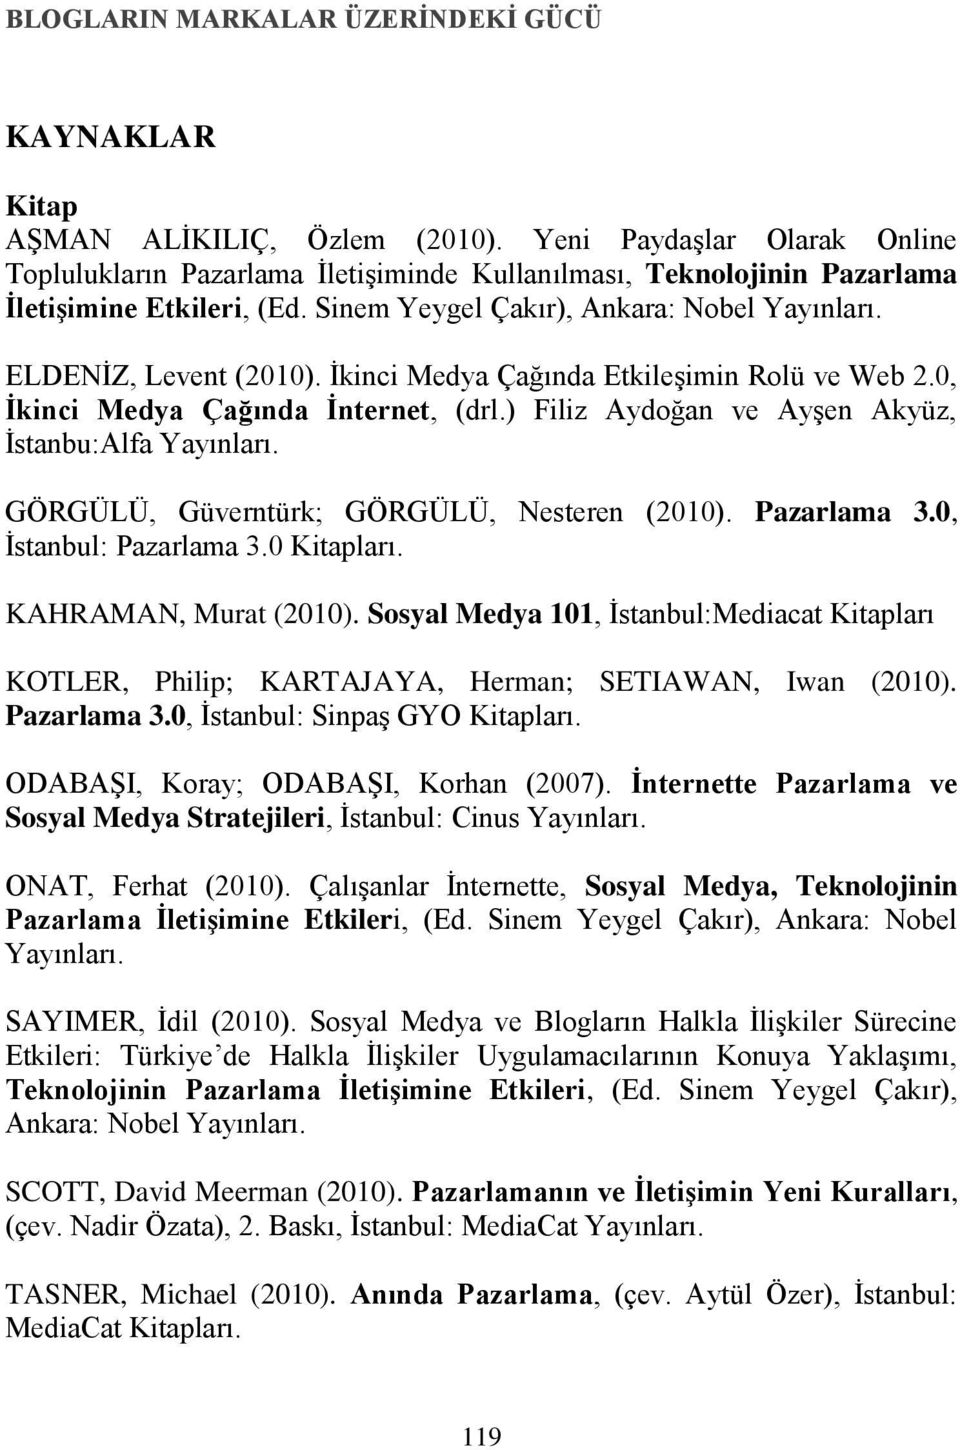 İkinci Medya Çağında Etkileşimin Rolü ve Web 2.0, Ġkinci Medya Çağında Ġnternet, (drl.) Filiz Aydoğan ve Ayşen Akyüz, İstanbu:Alfa Yayınları. GÖRGÜLÜ, Güverntürk; GÖRGÜLÜ, Nesteren (2010).